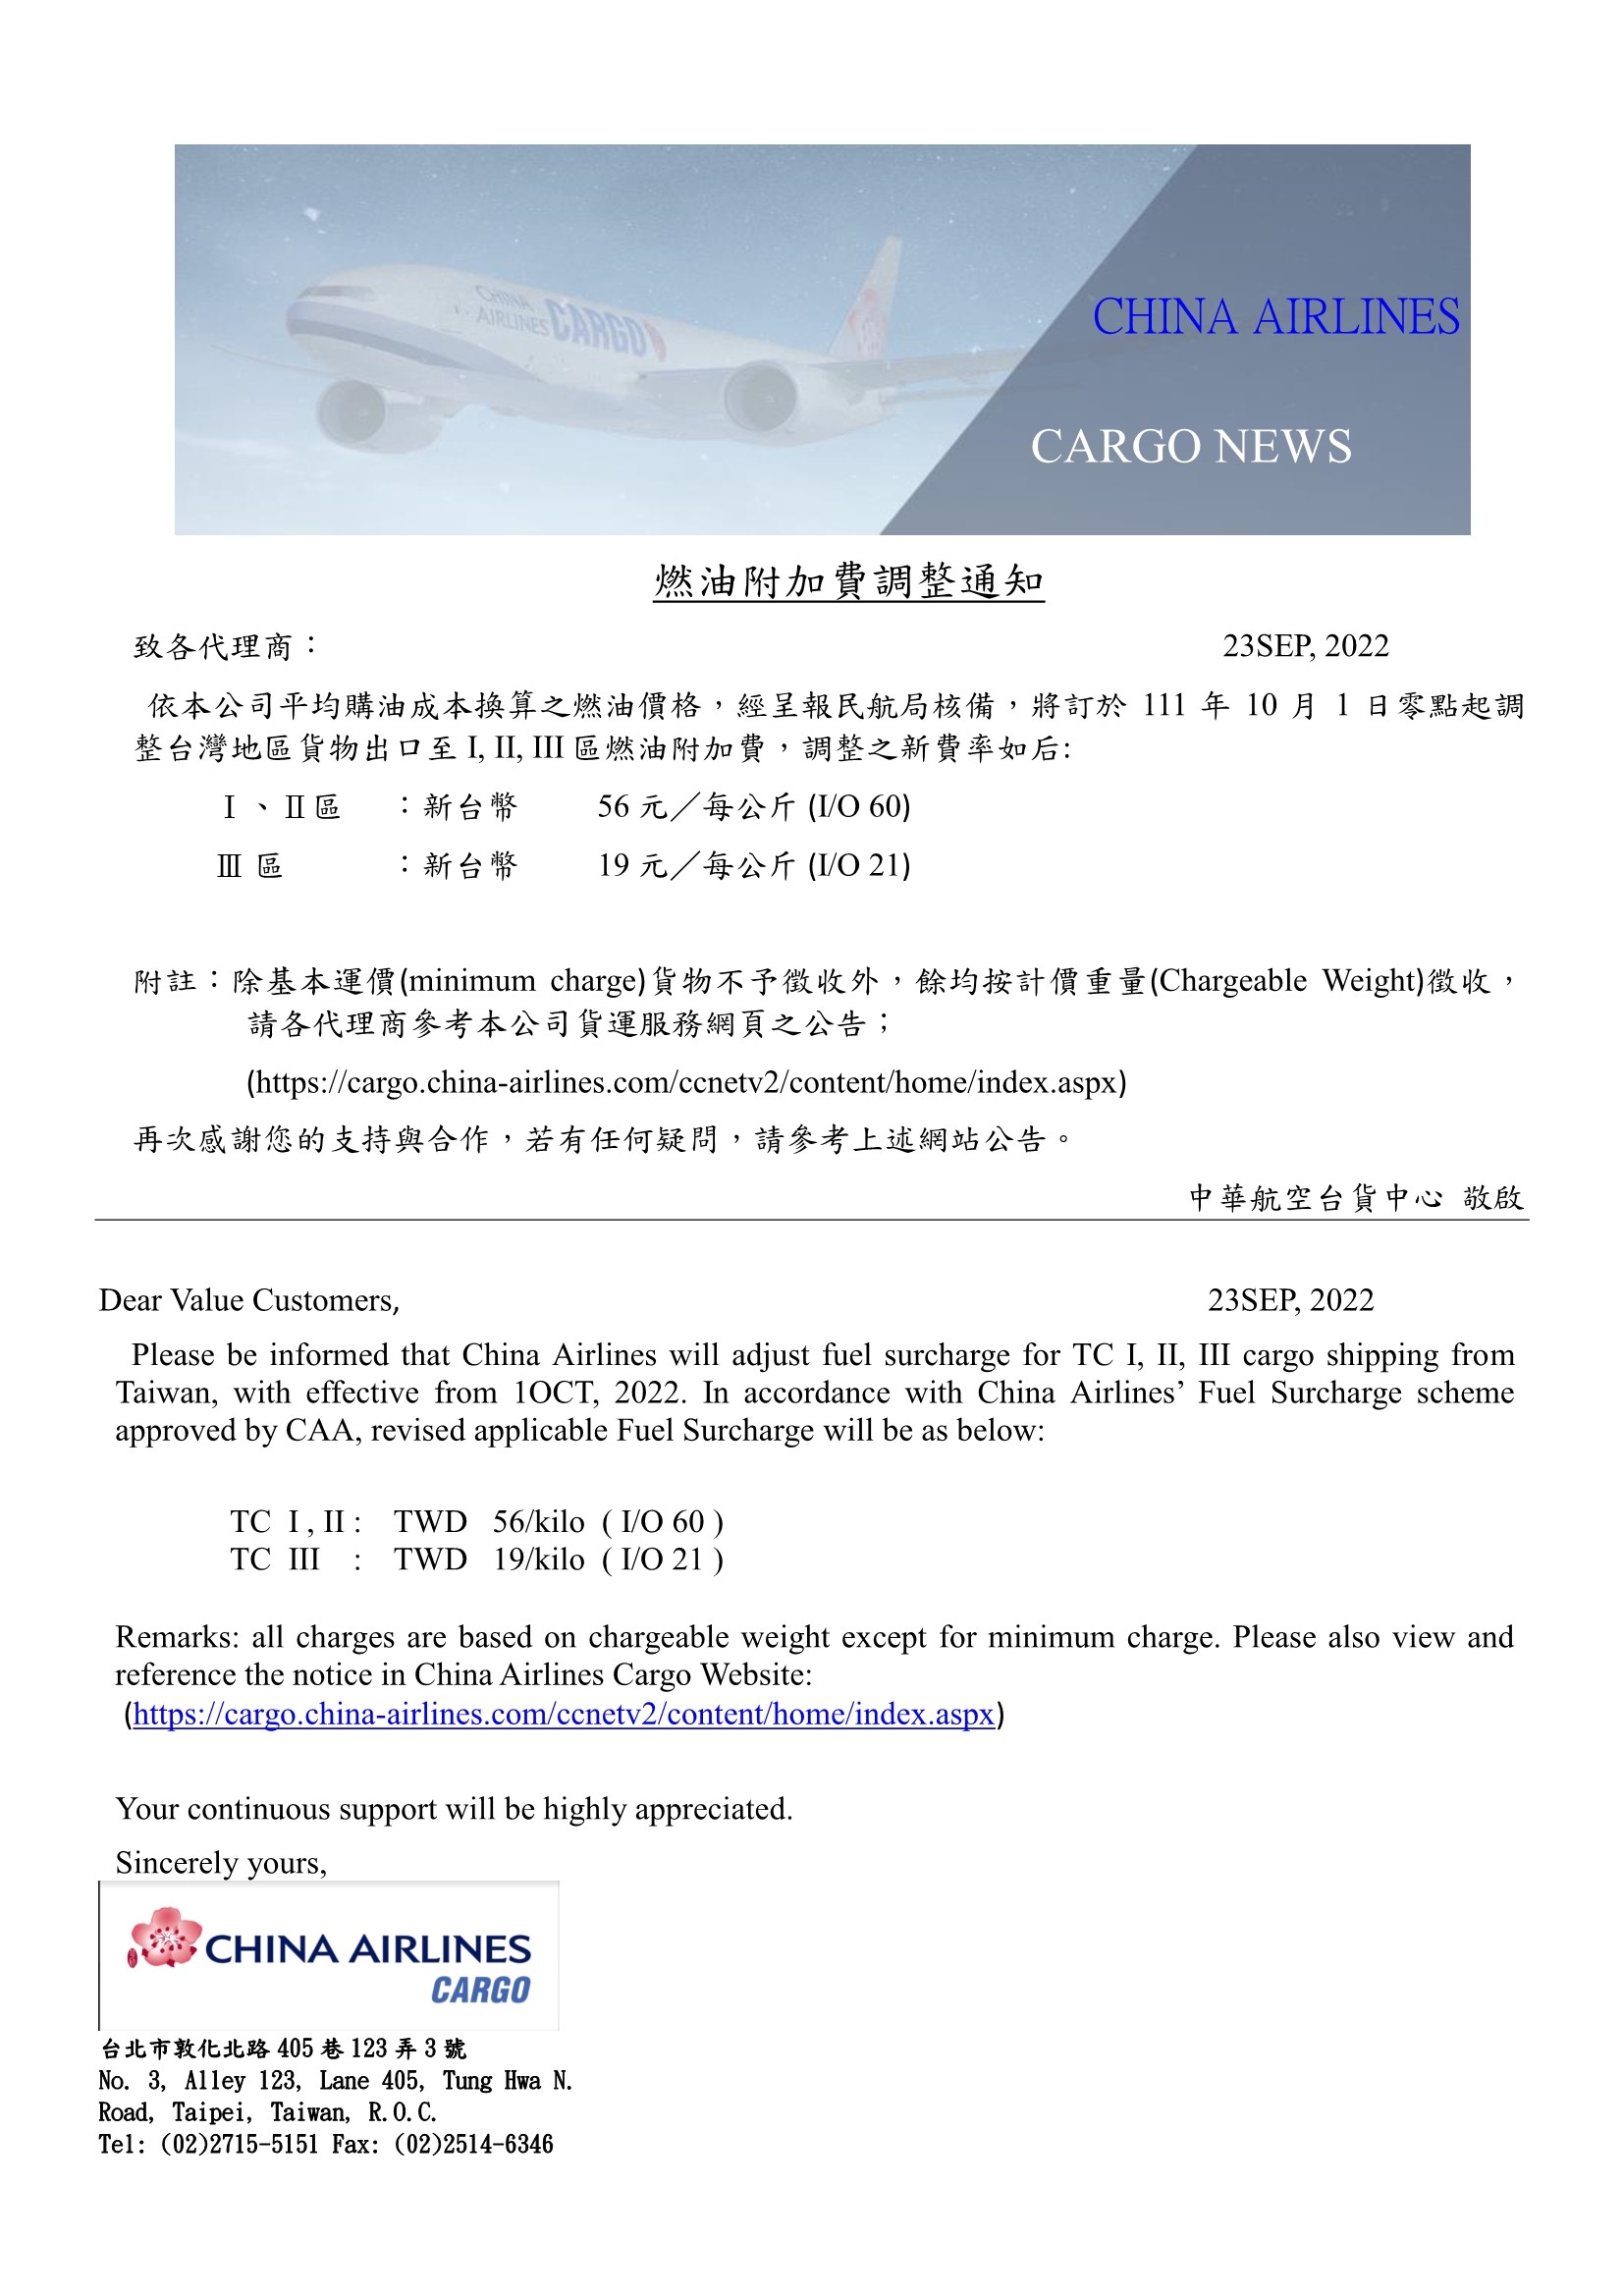 中華航空2022年10月1日台灣區貨運燃油附加費調整公告.jpg